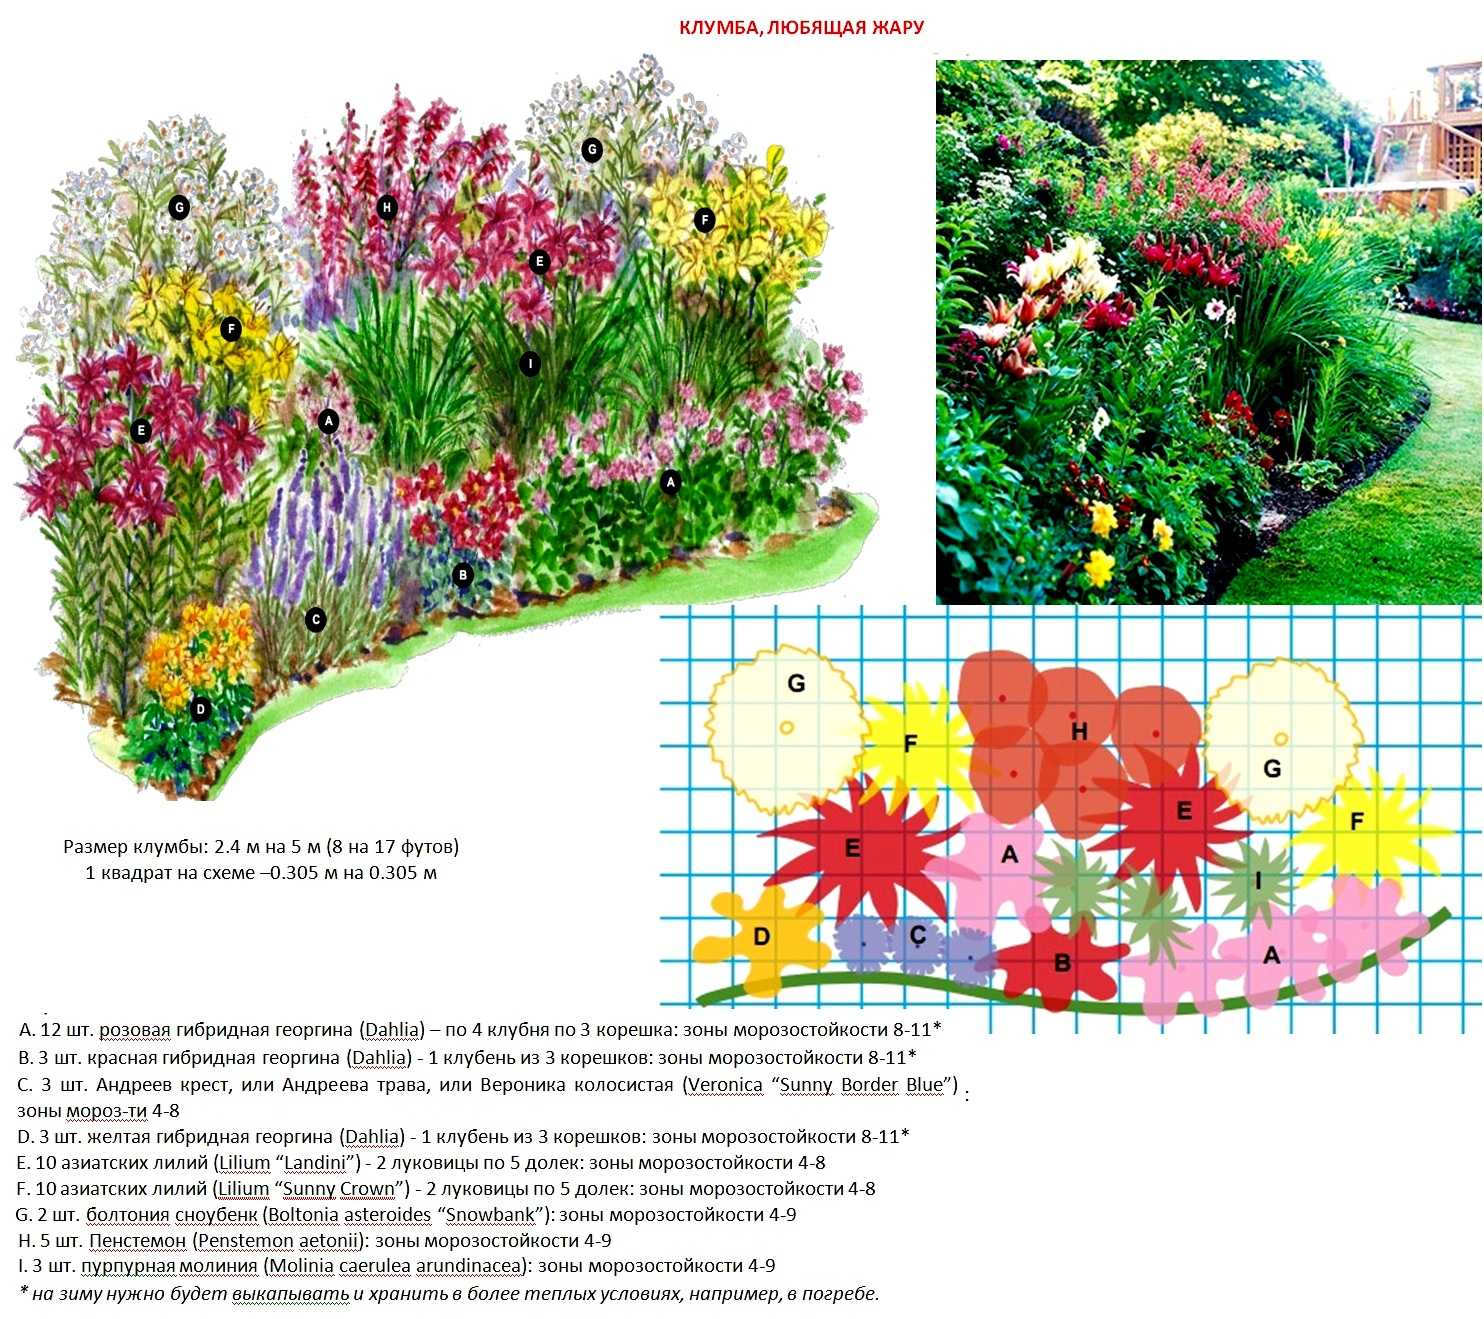 Цветы для клумбы: фото, названия растений, схема, совместимость однолетних и многолетних цветов, сочетание из кустарников | qlumba.com